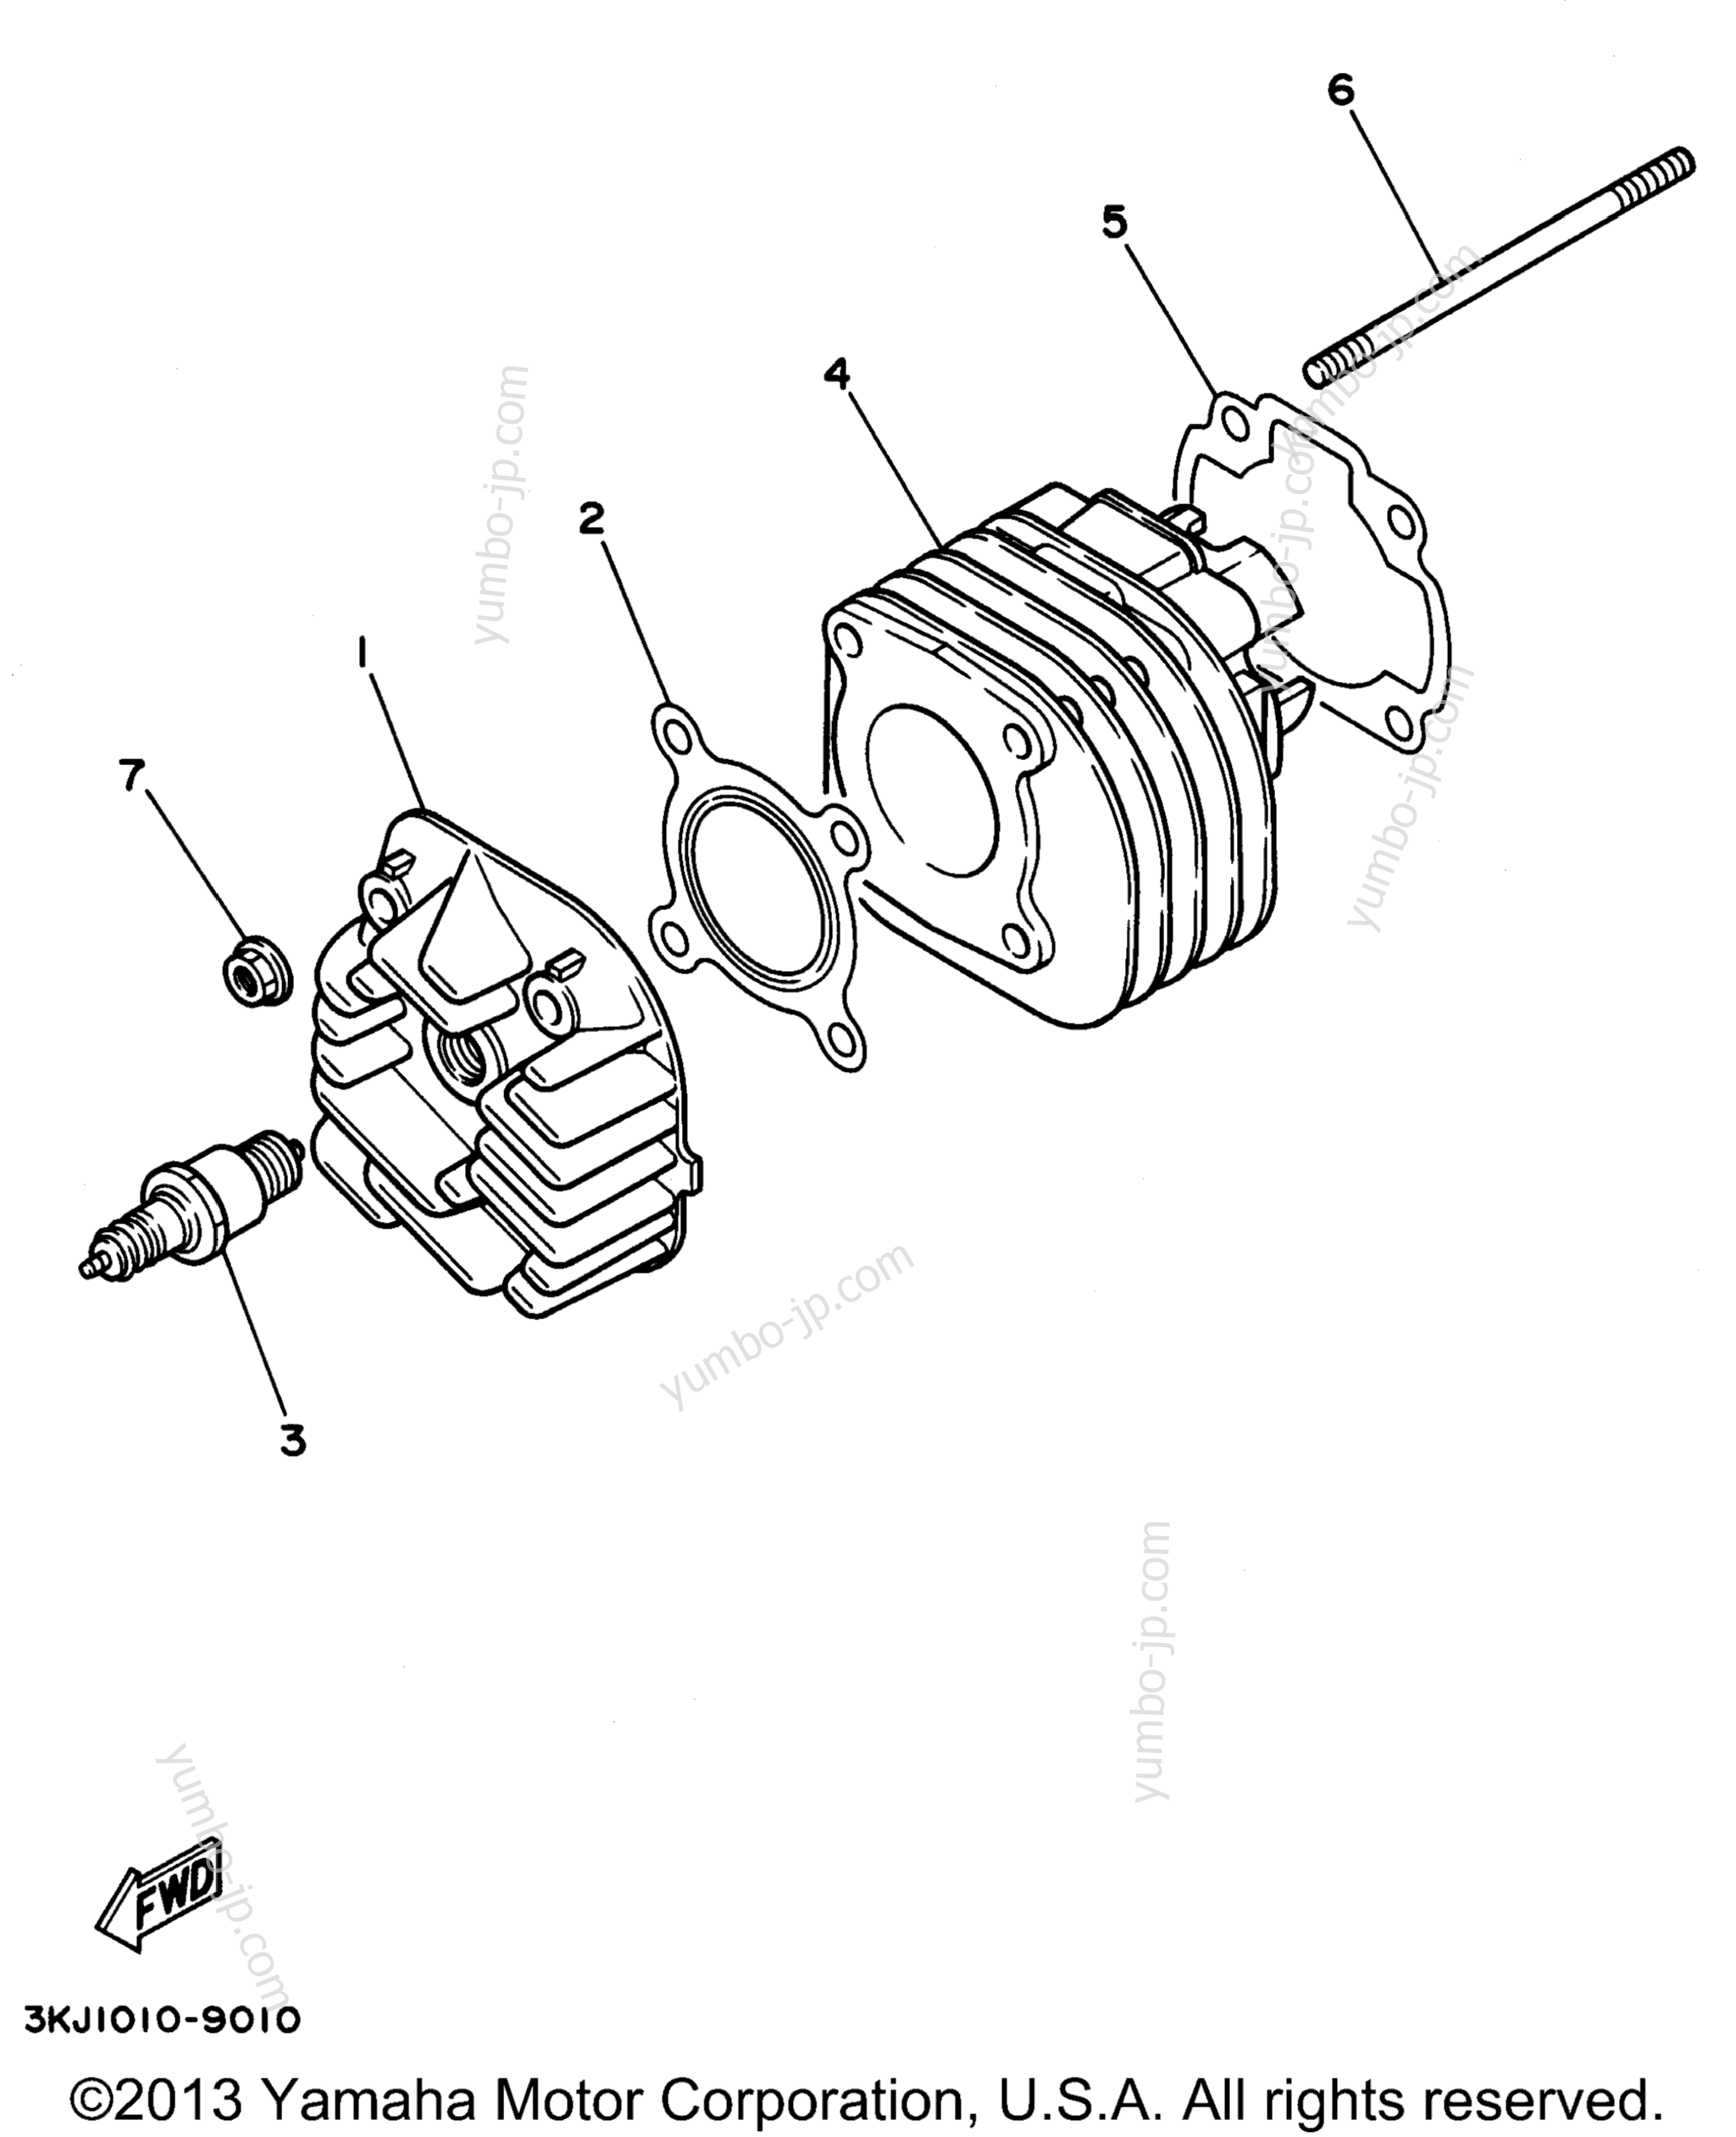 Головка блока цилиндров для скутеров YAMAHA JOG (CY50H) 1996 г.